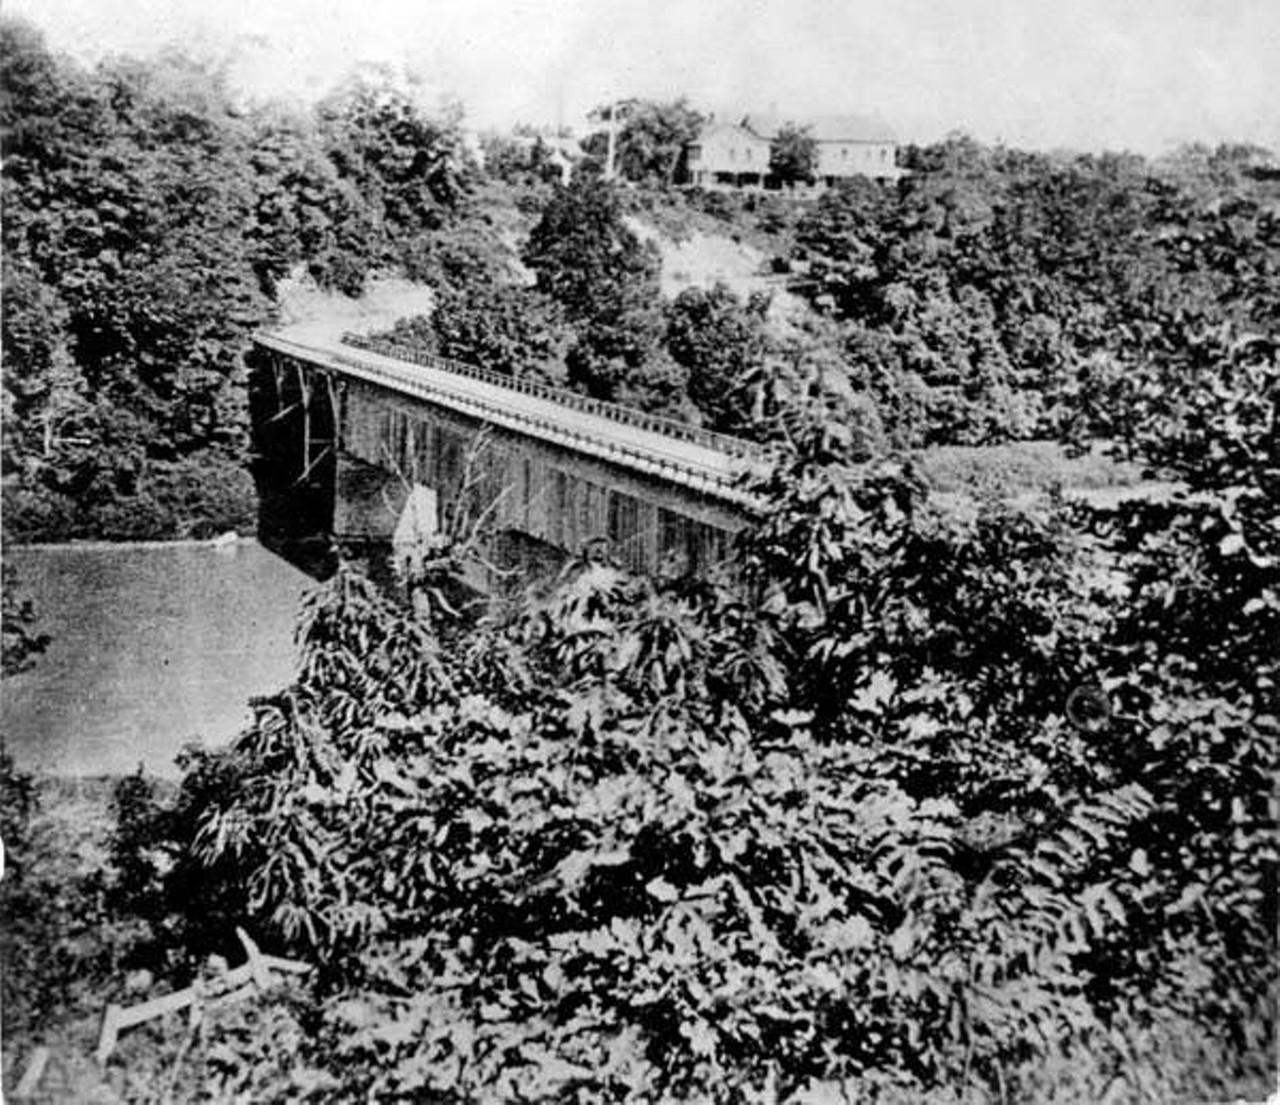  Rocky River Toll Bridge, 1870 